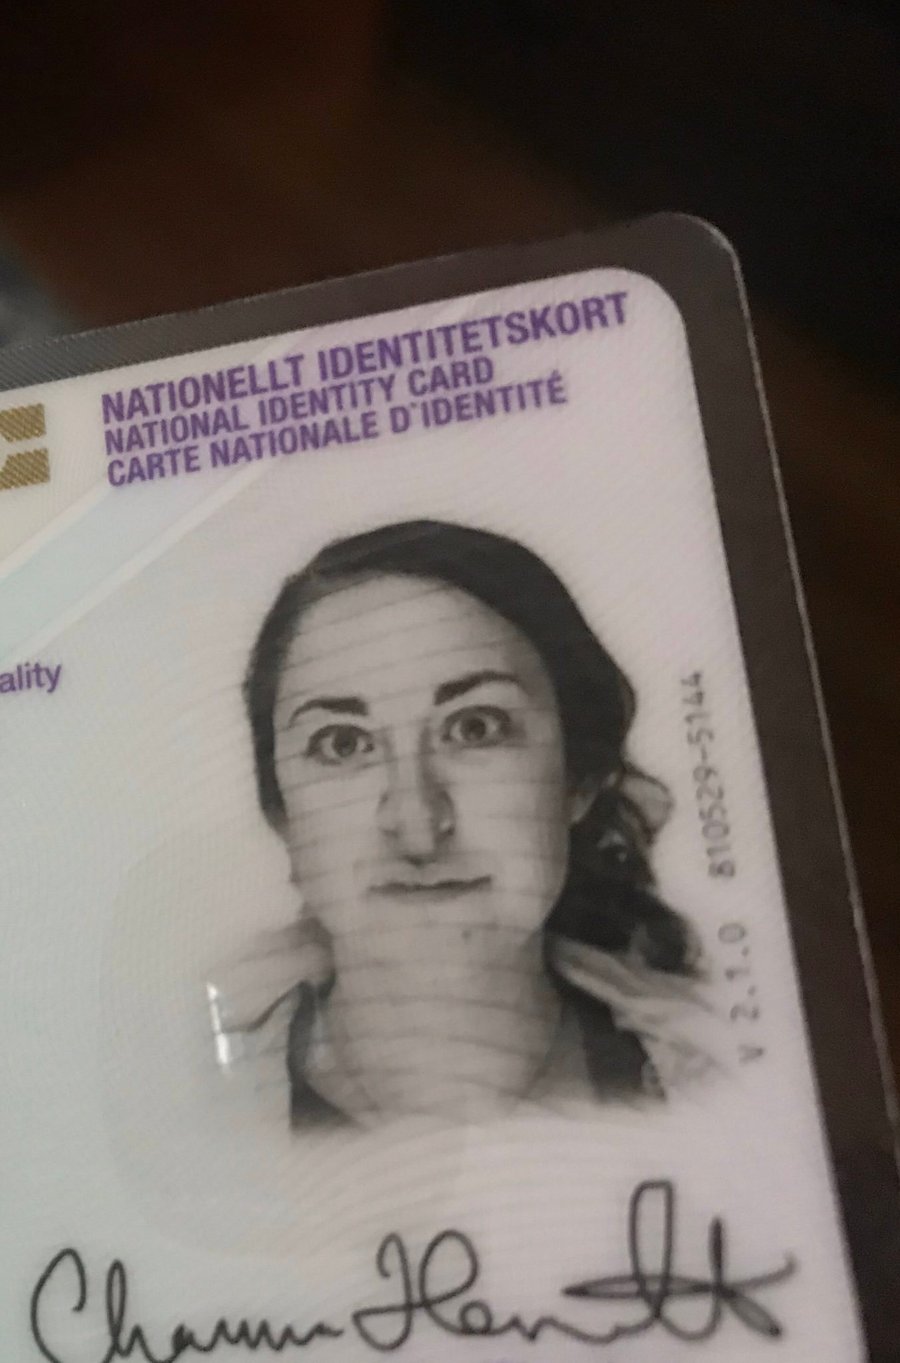 העיתונאית היהודיה קיבלה את הדרכון עם "אף ארוך"